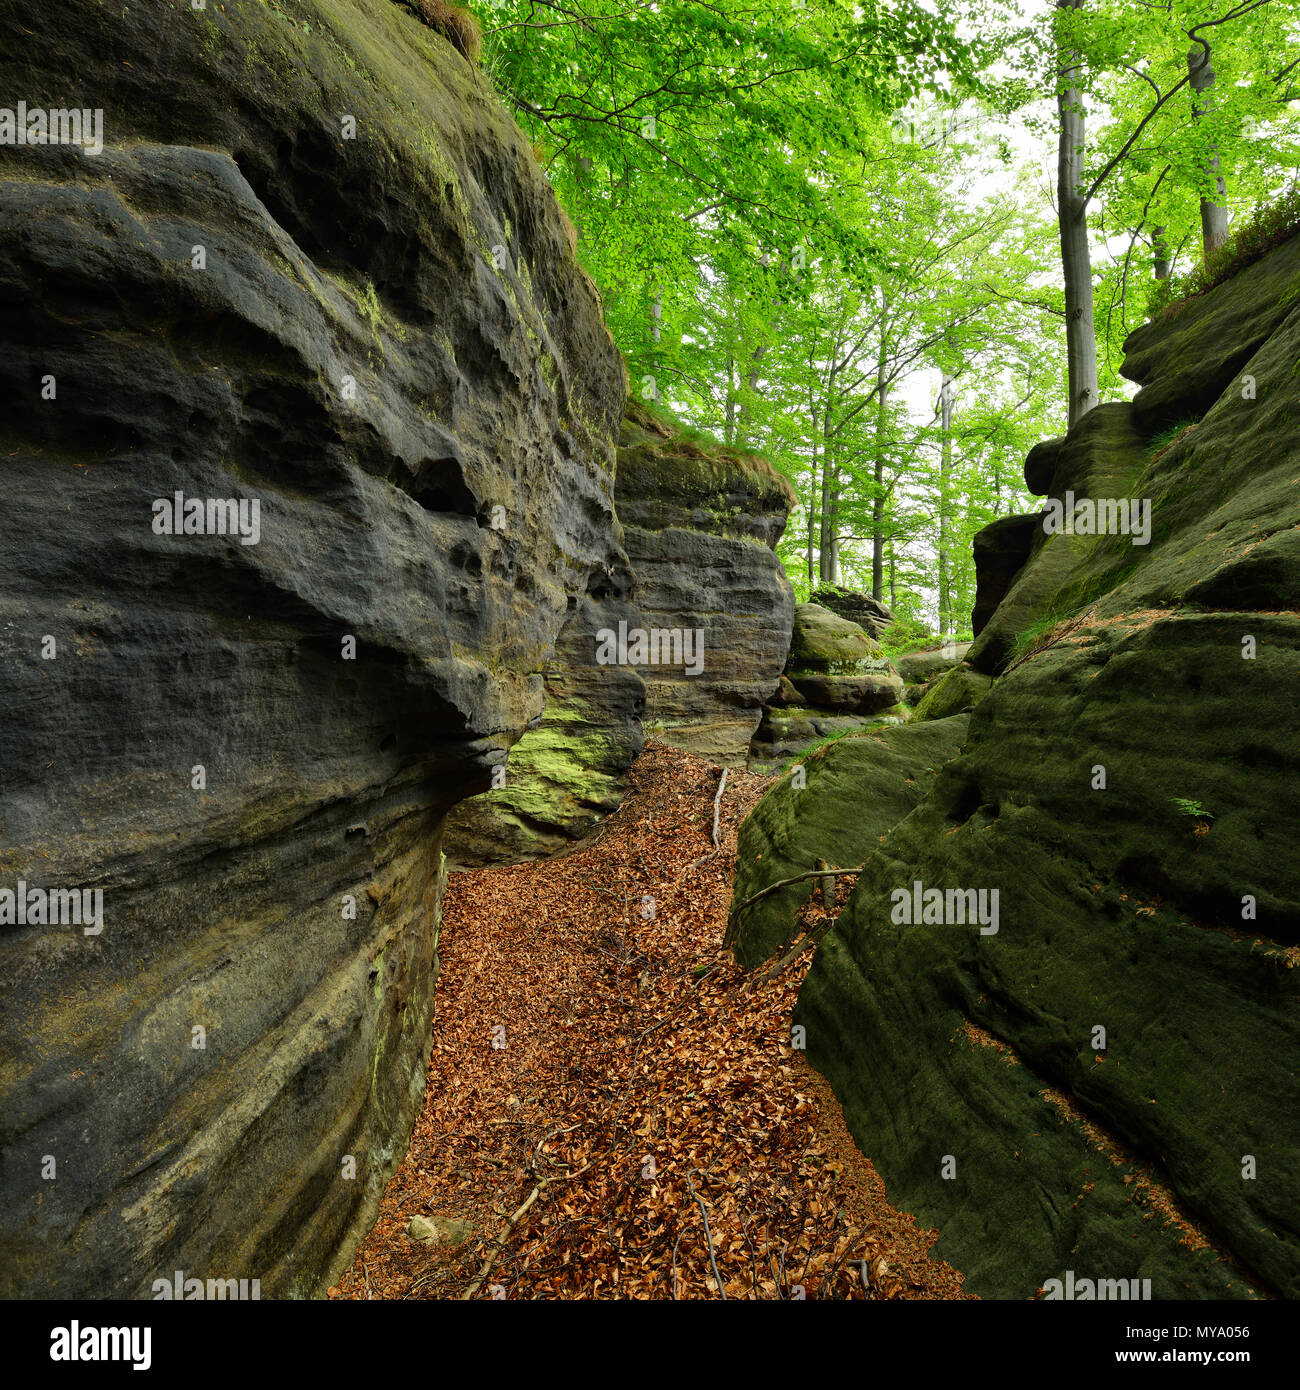 Les grands rochers de grès dans la forêt de hêtres, des montagnes de grès de l'Elbe, la Suisse Saxonne Parc National, près de Bad Schandau, Saxe Banque D'Images